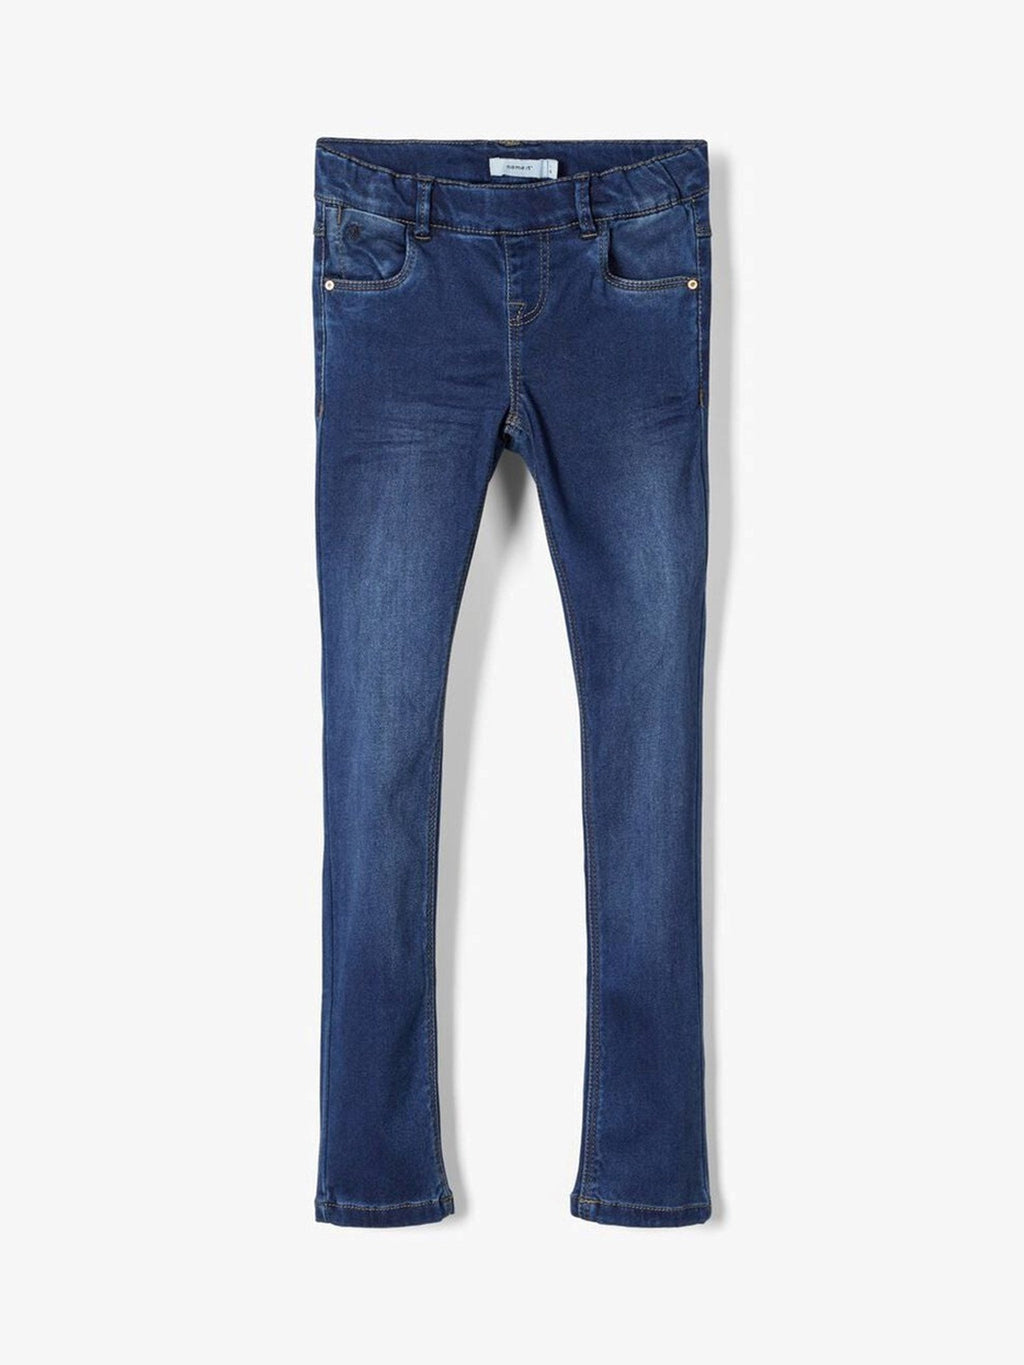 Super weicher Jeggings - dunkelblauer Jeans